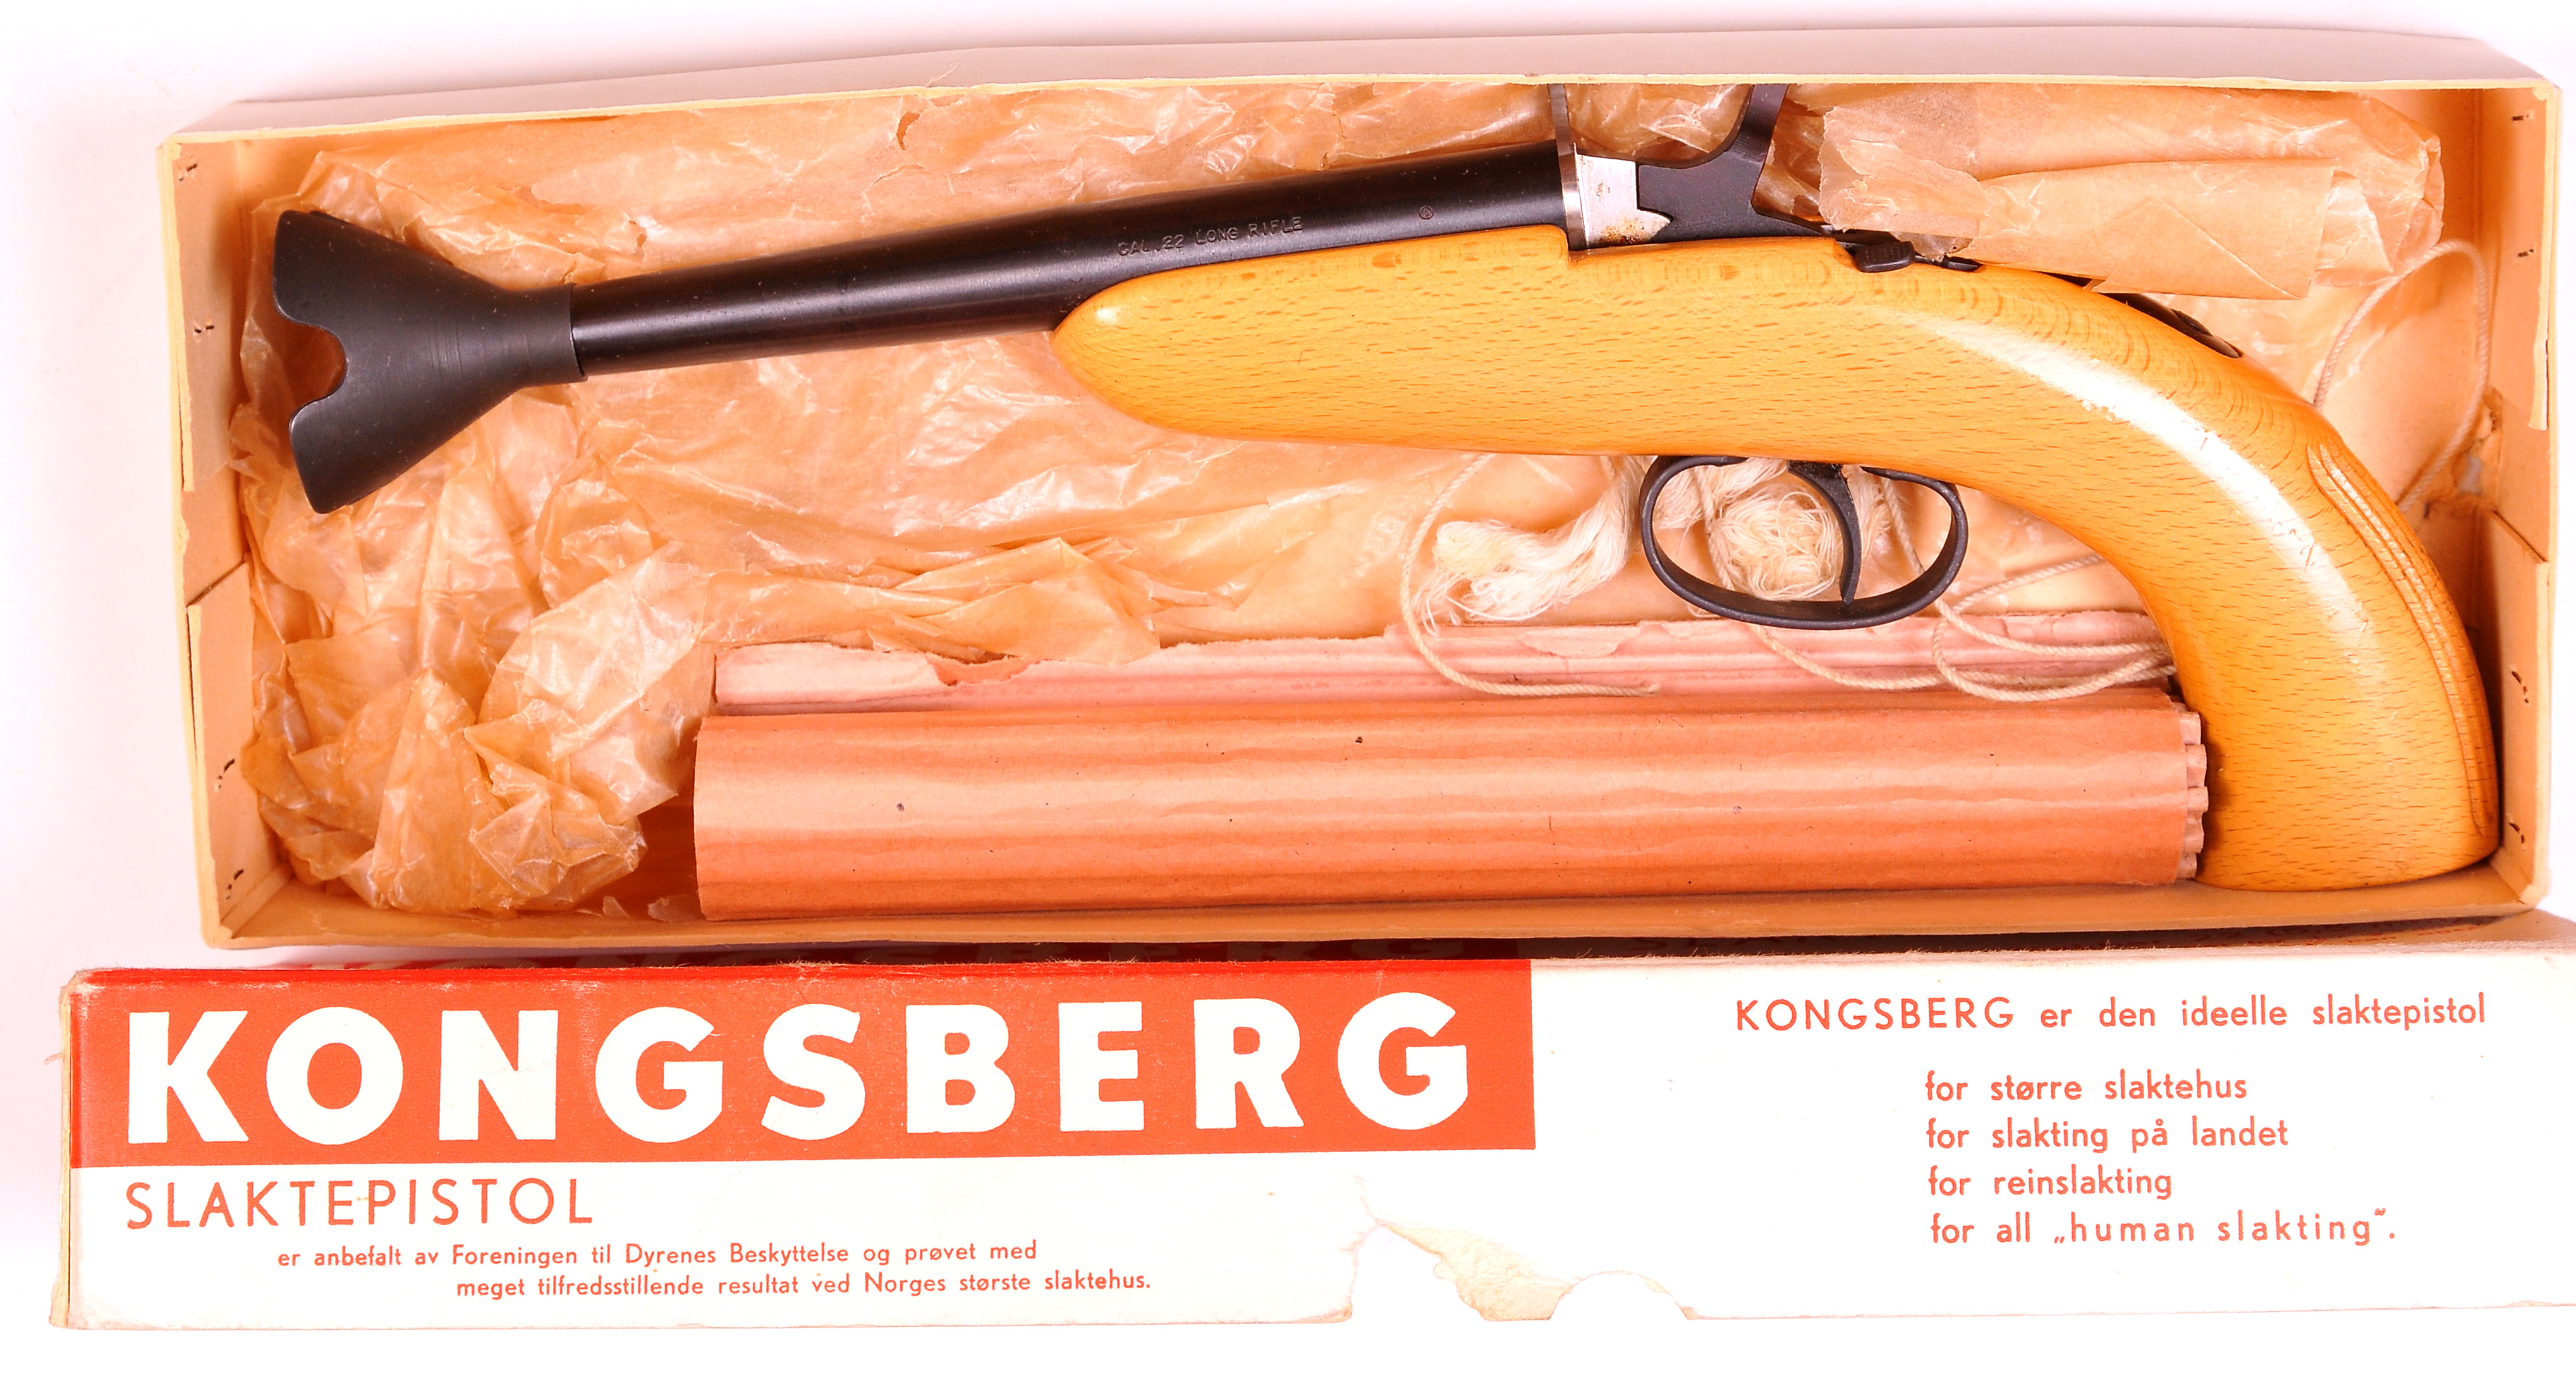 ./guns/slaktepistol/bilder/Slakt-Kongsberg-M51-531-2.jpg